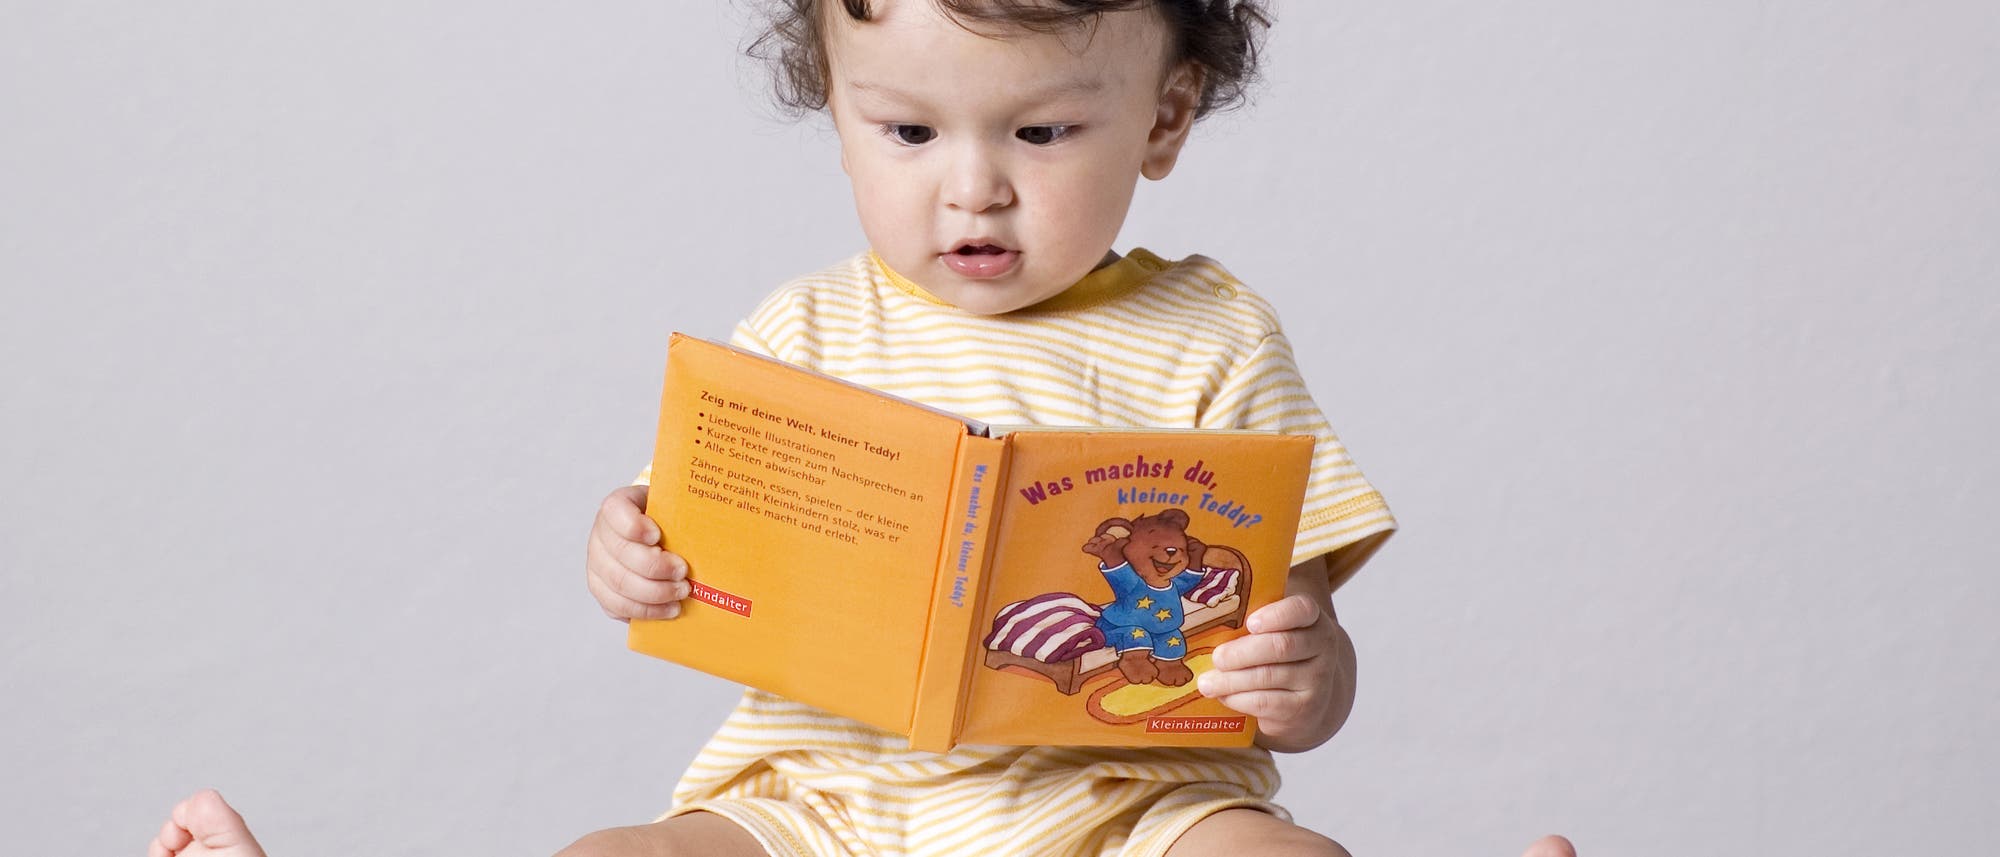 Ein kleines Kind mit Buch